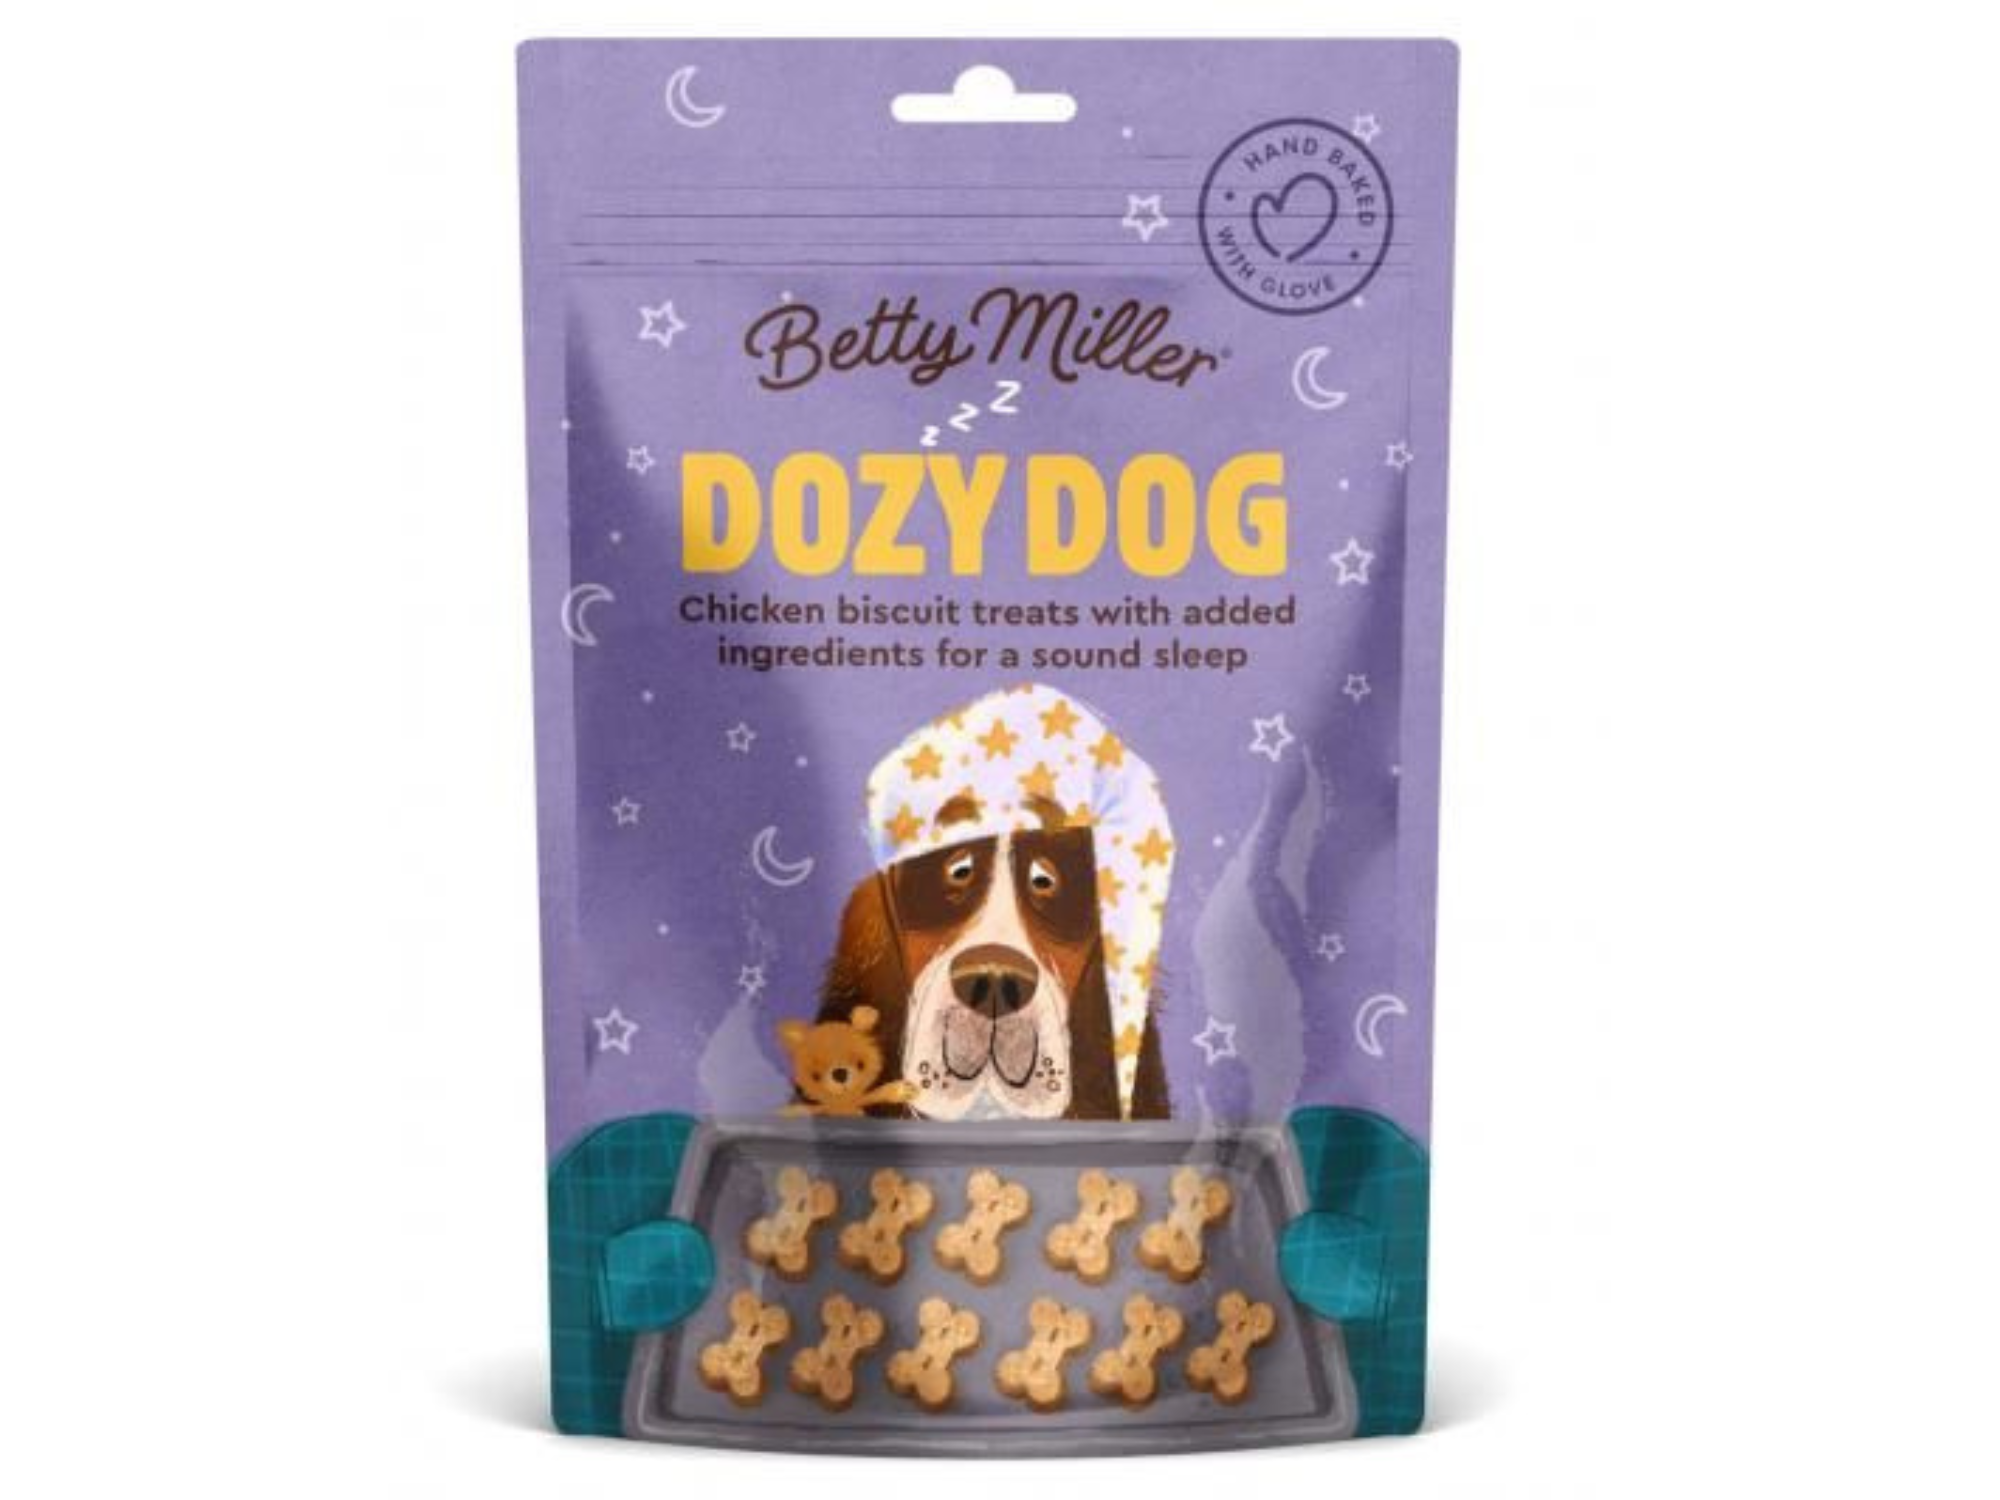 Dozy Dog Baked Treats | Betty Miller Treats